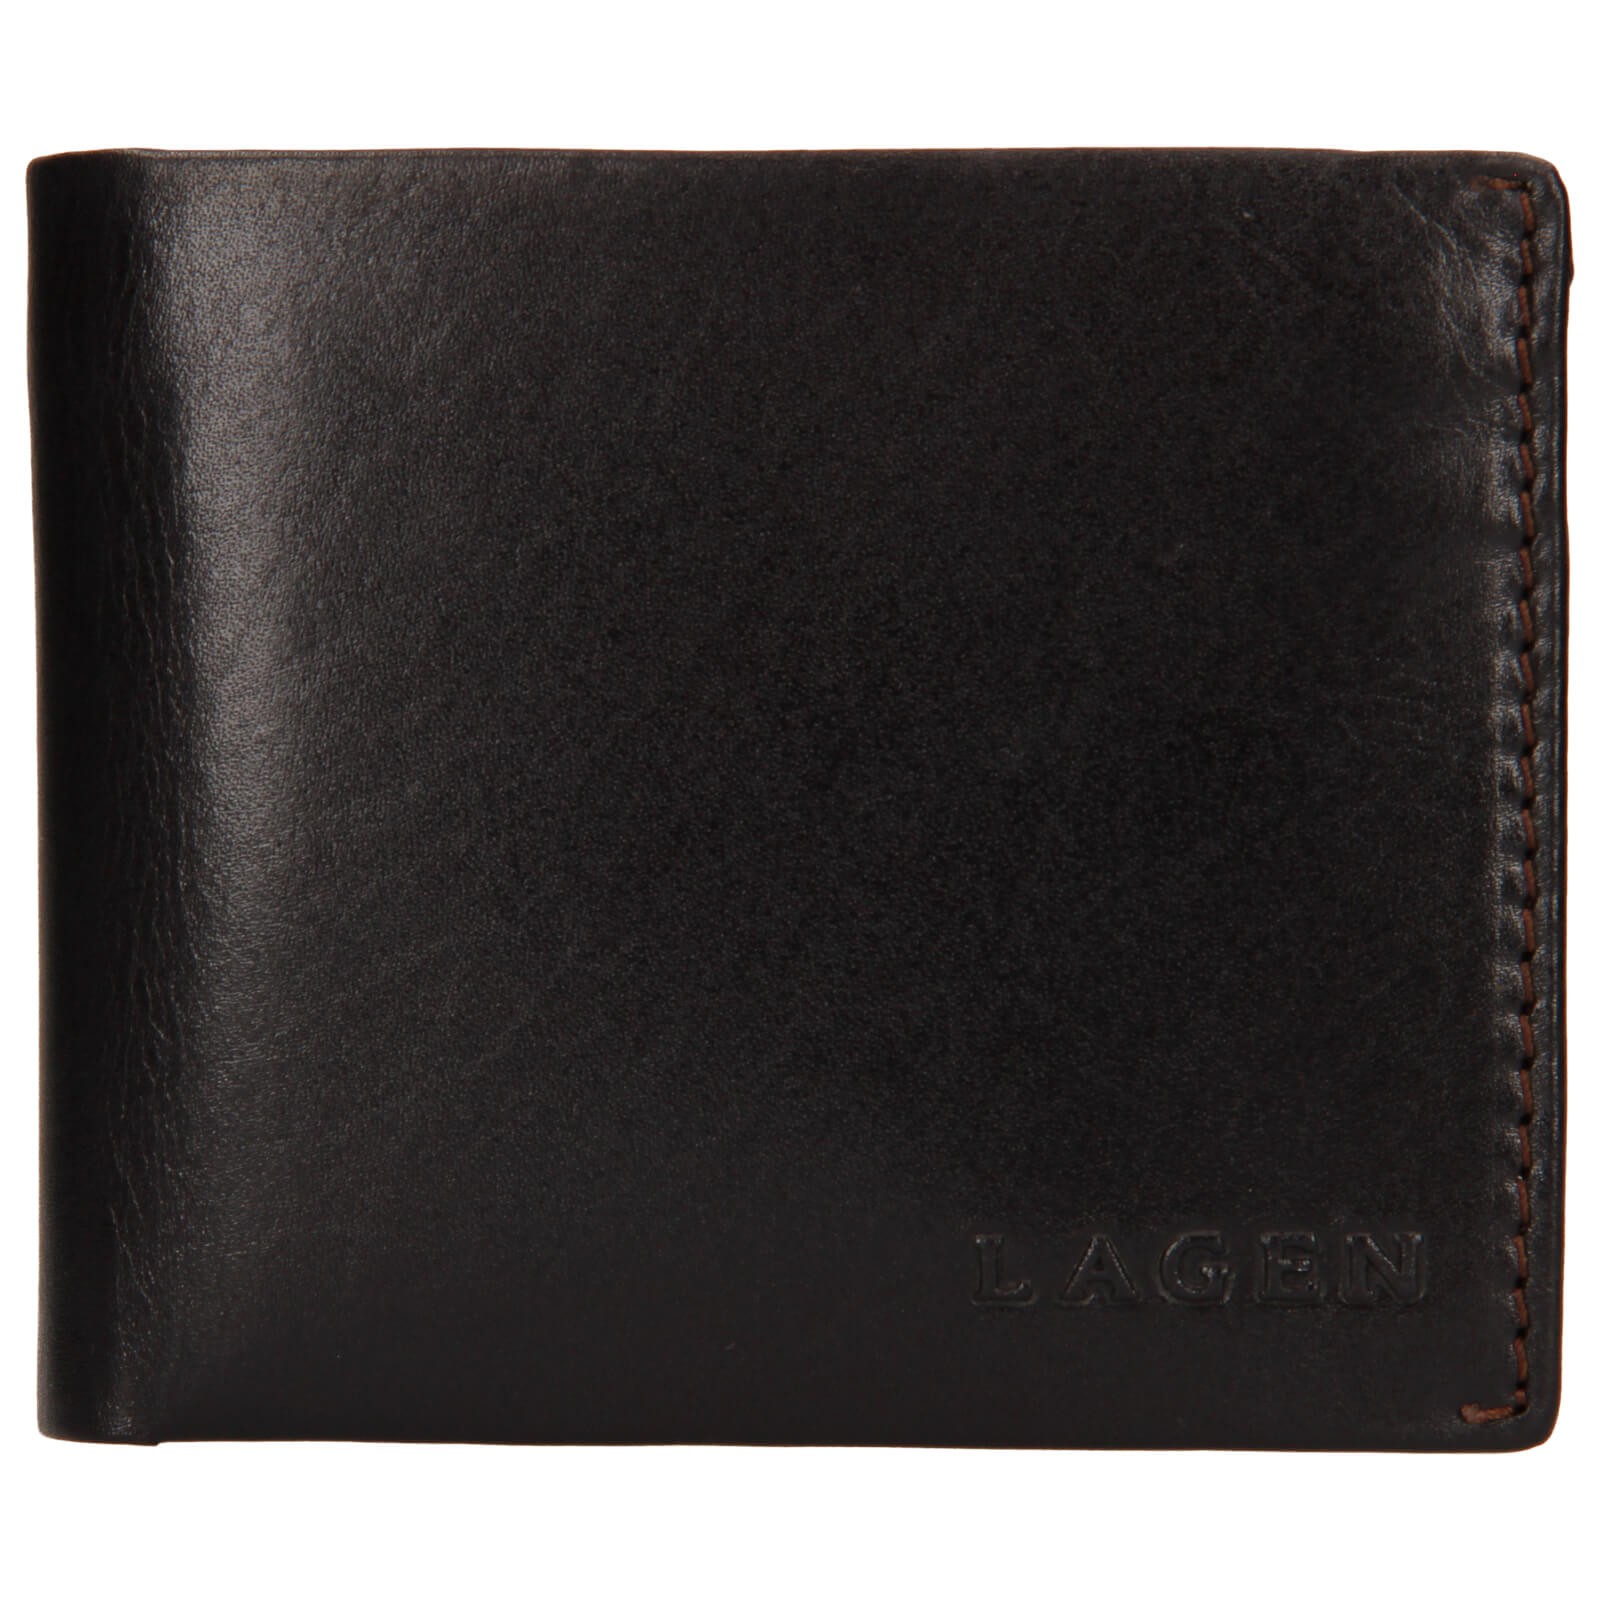 Pánská kožená peněženka Lagen Dalimil - hnědá